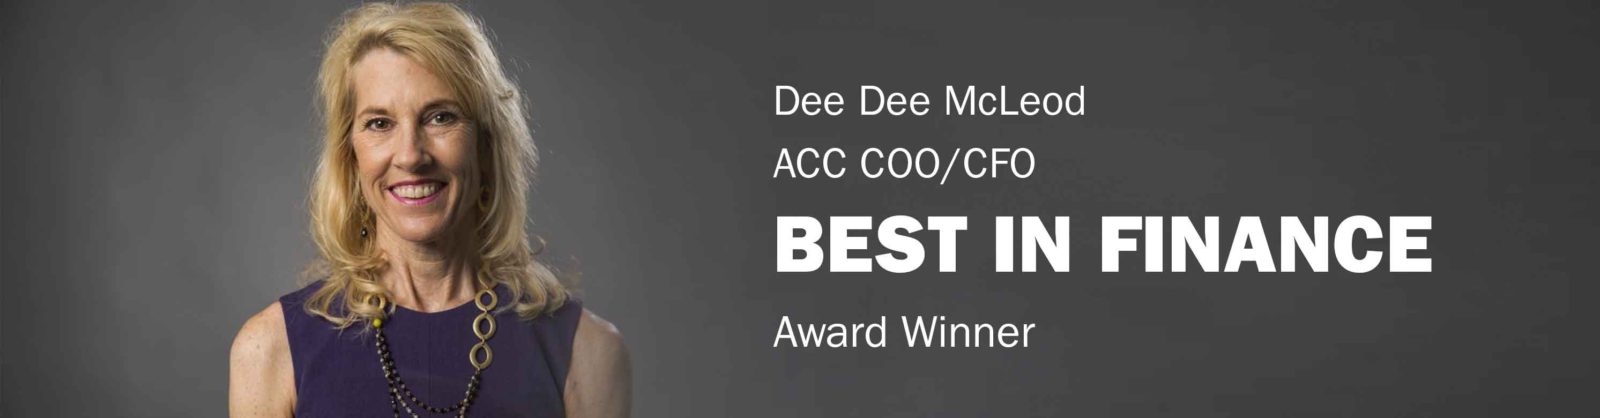 Best in Finance Award Winner Dee Dee McLeod Banner